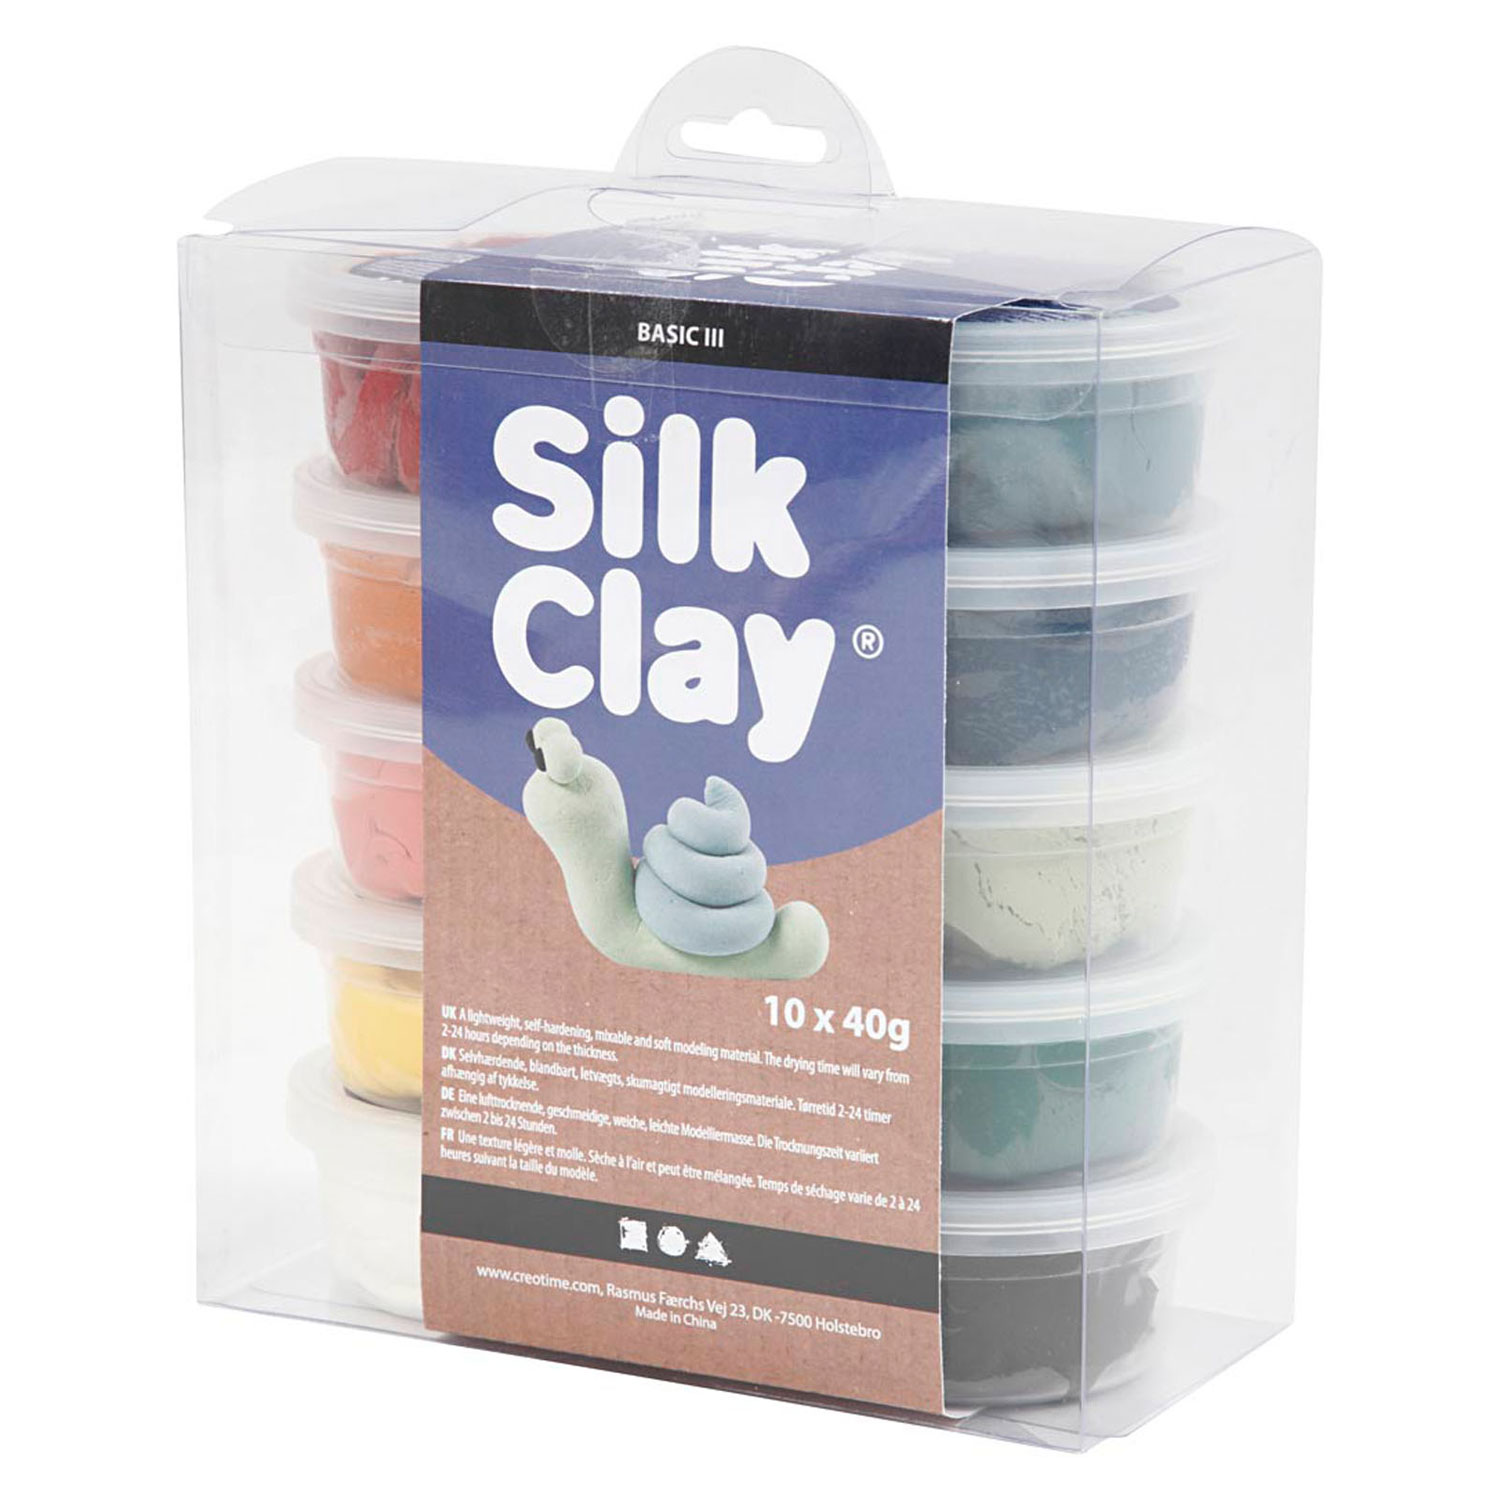 Silk Clay, Pastellfarben, 10 Stk.